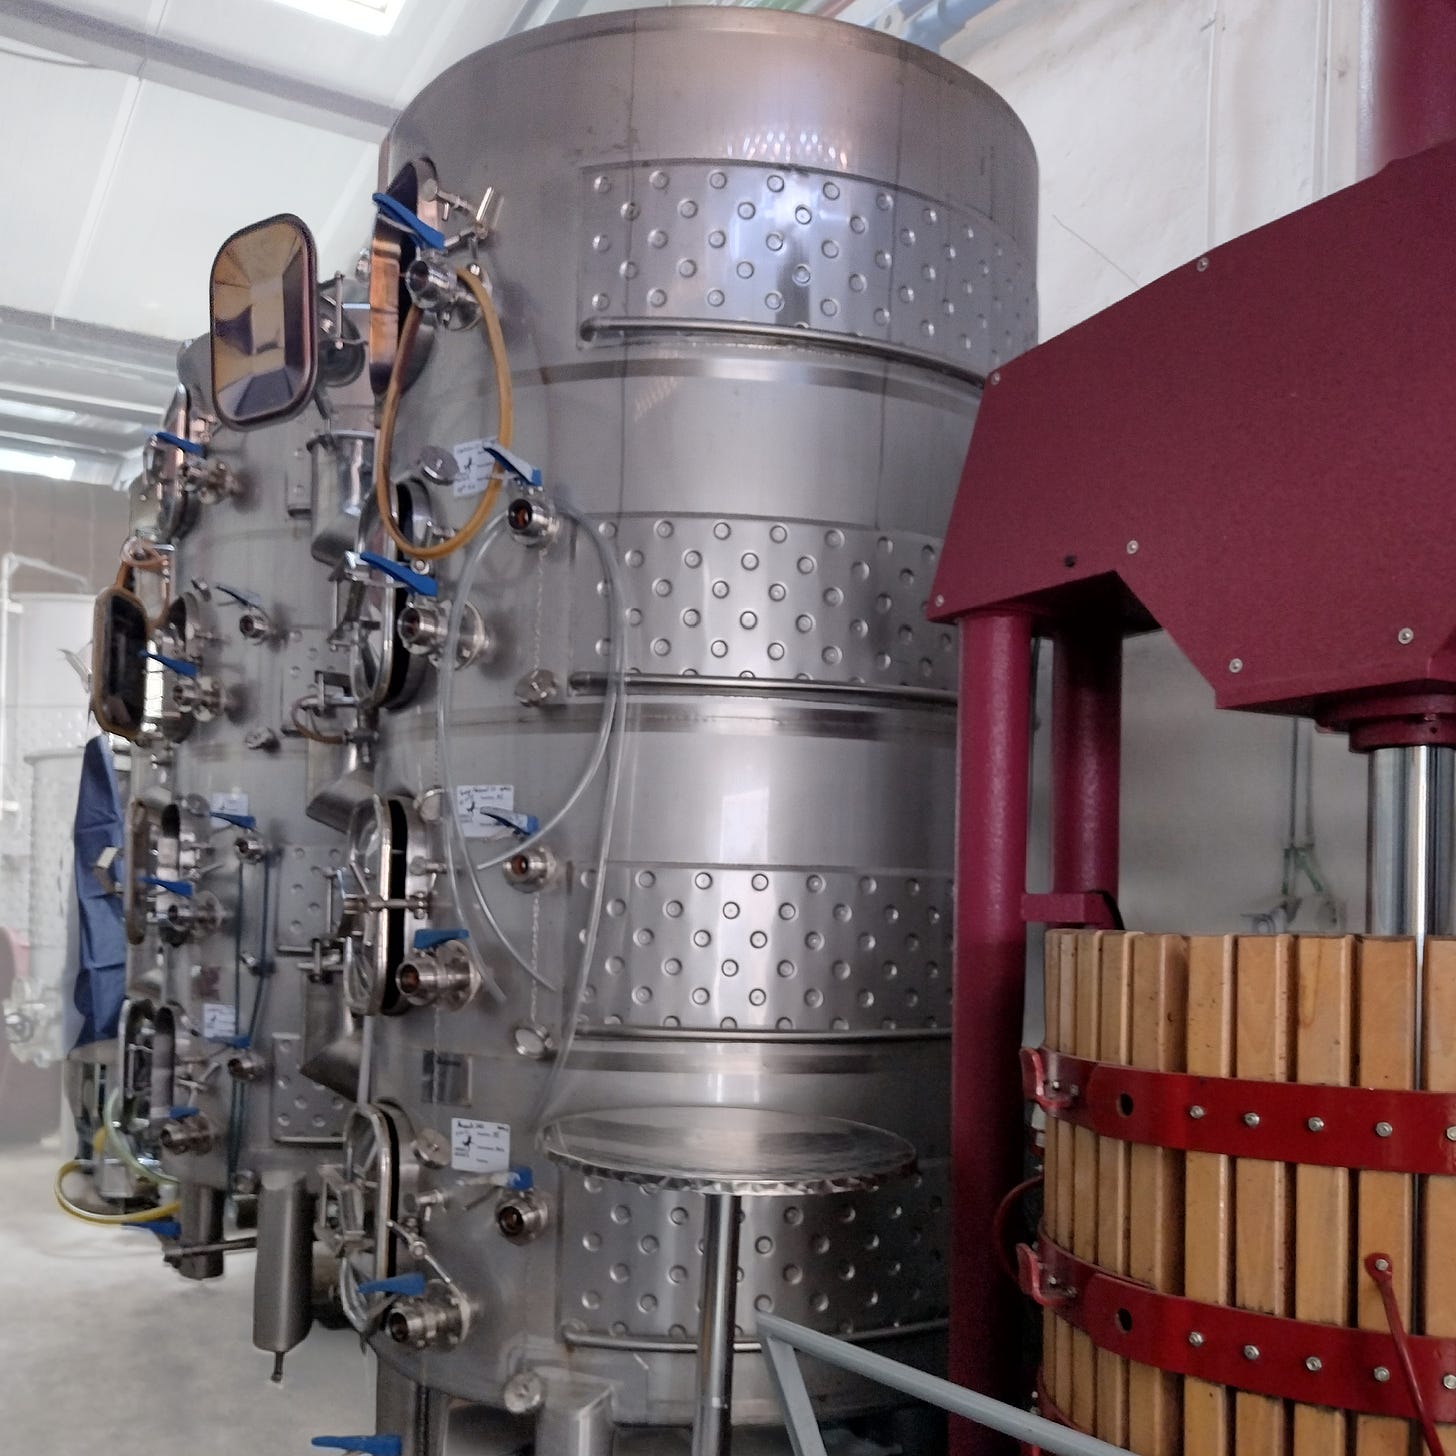 Winemaking equipment